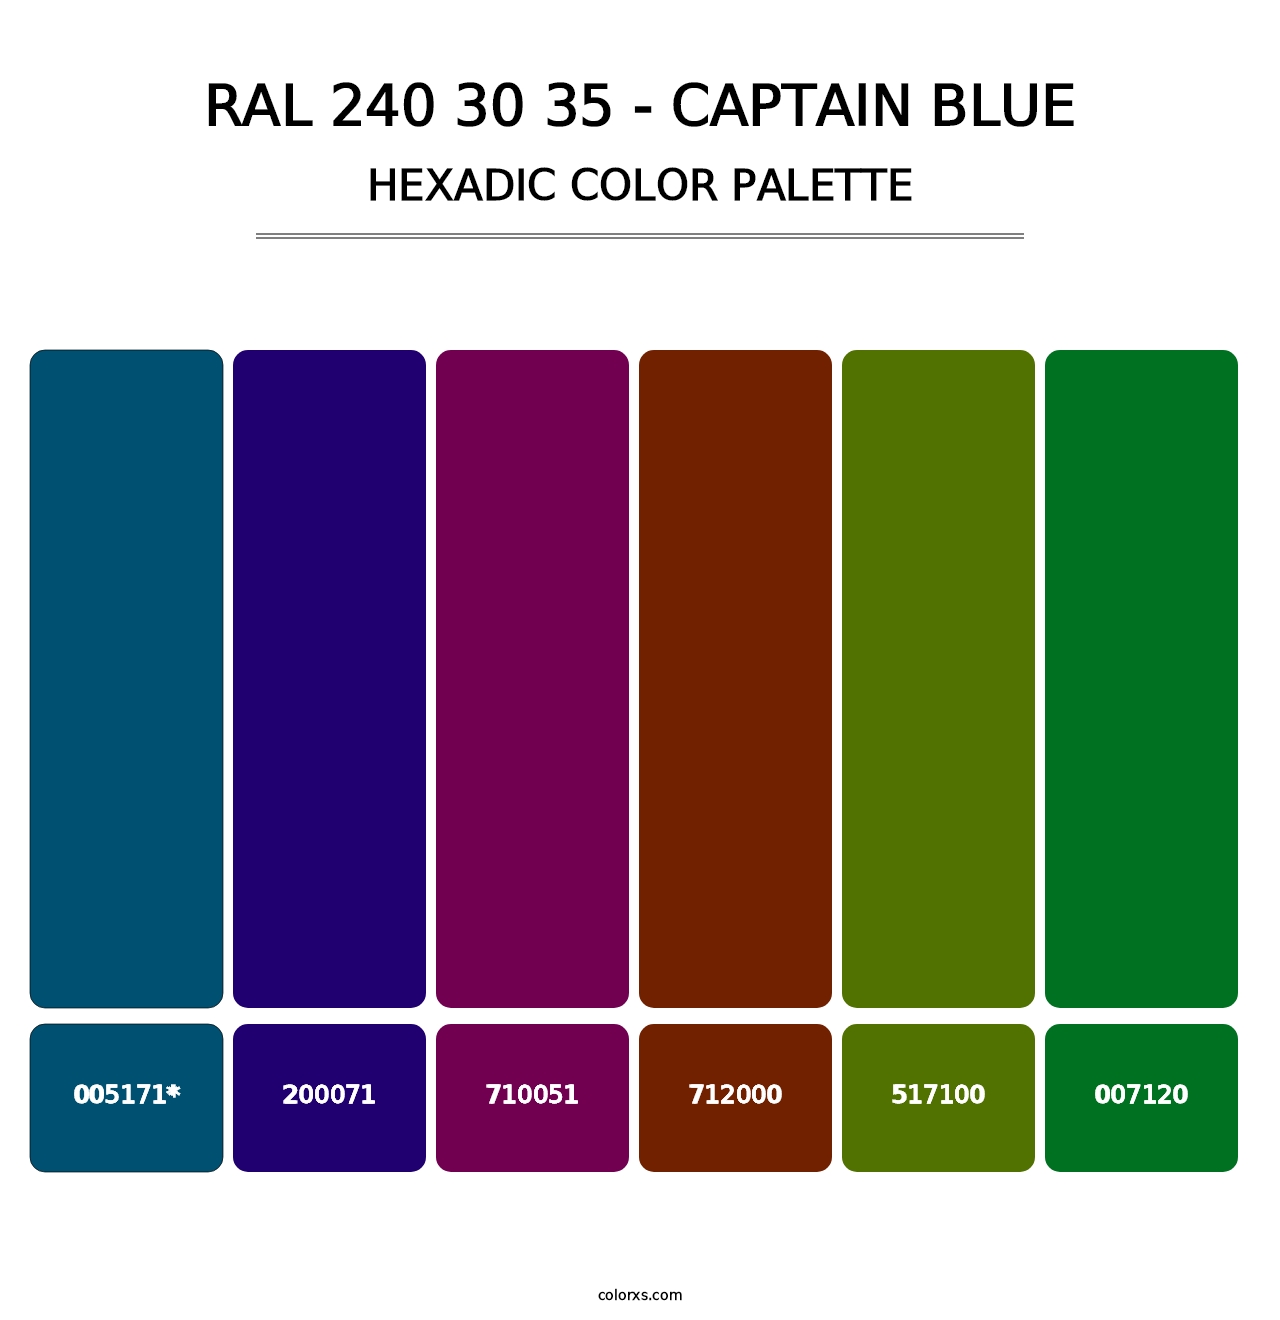 RAL 240 30 35 - Captain Blue - Hexadic Color Palette